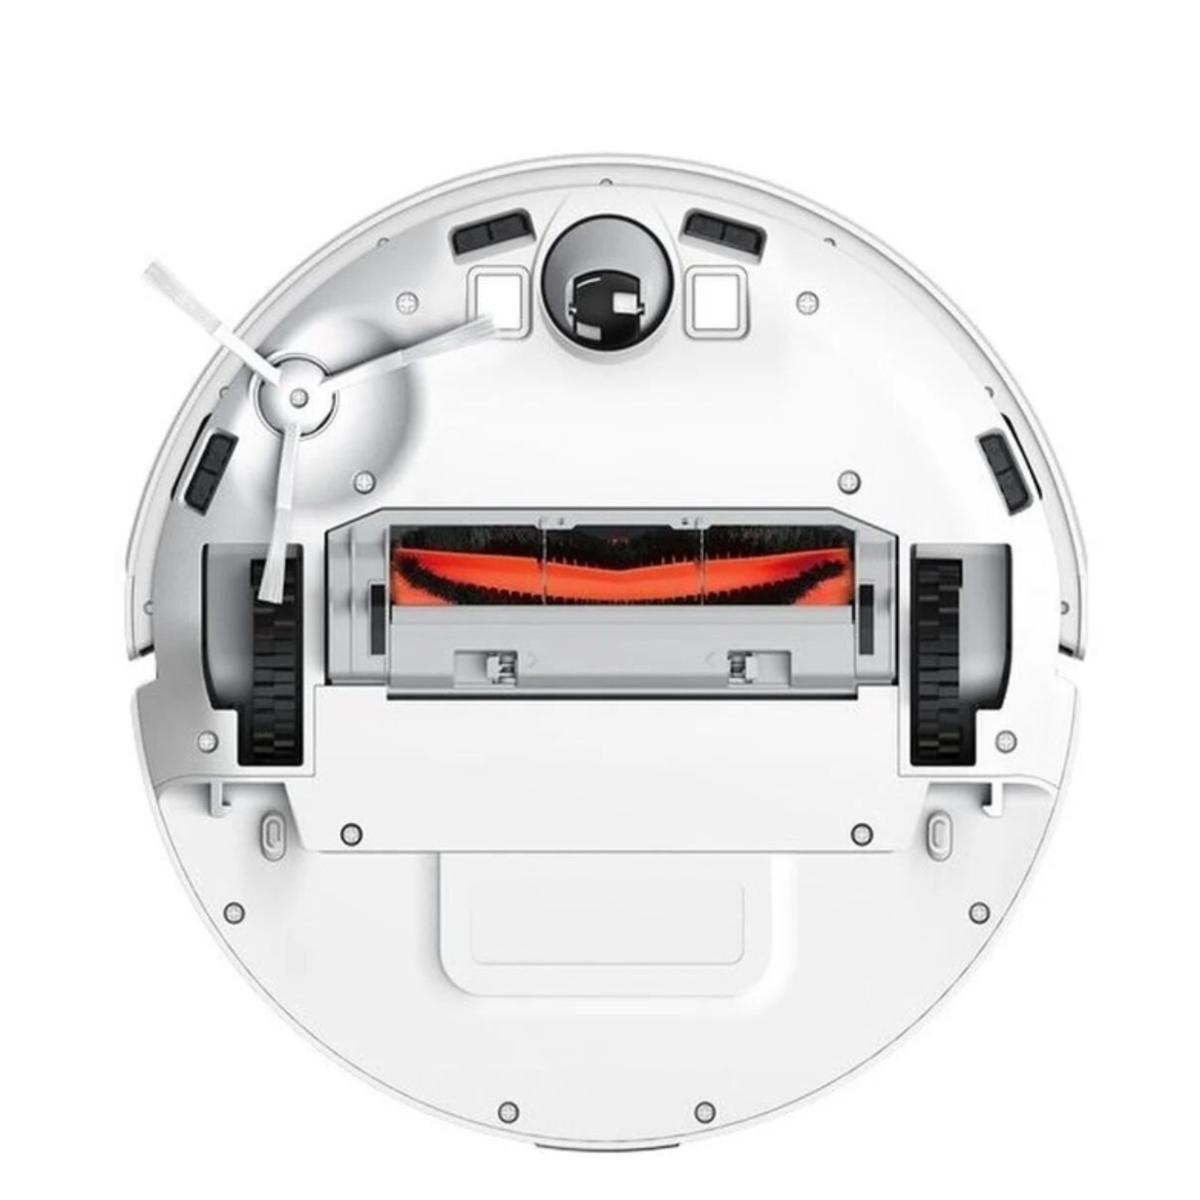 Robot Mi Vacuum-Mop 2 Roboterstaubsauger LITE XIAOMI